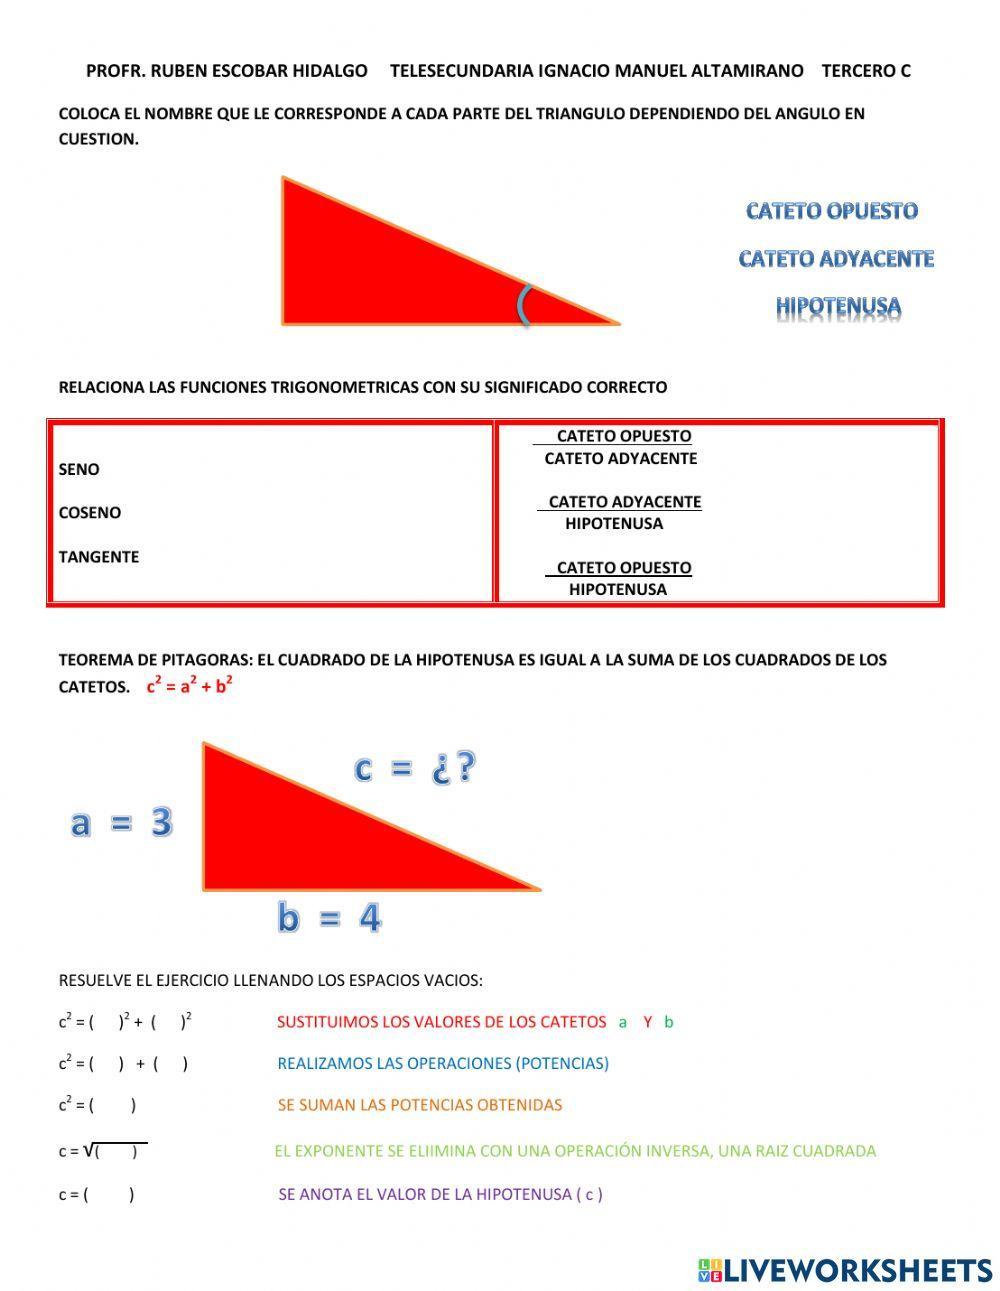 Funciones trigonometricas y teorema de pitagoras